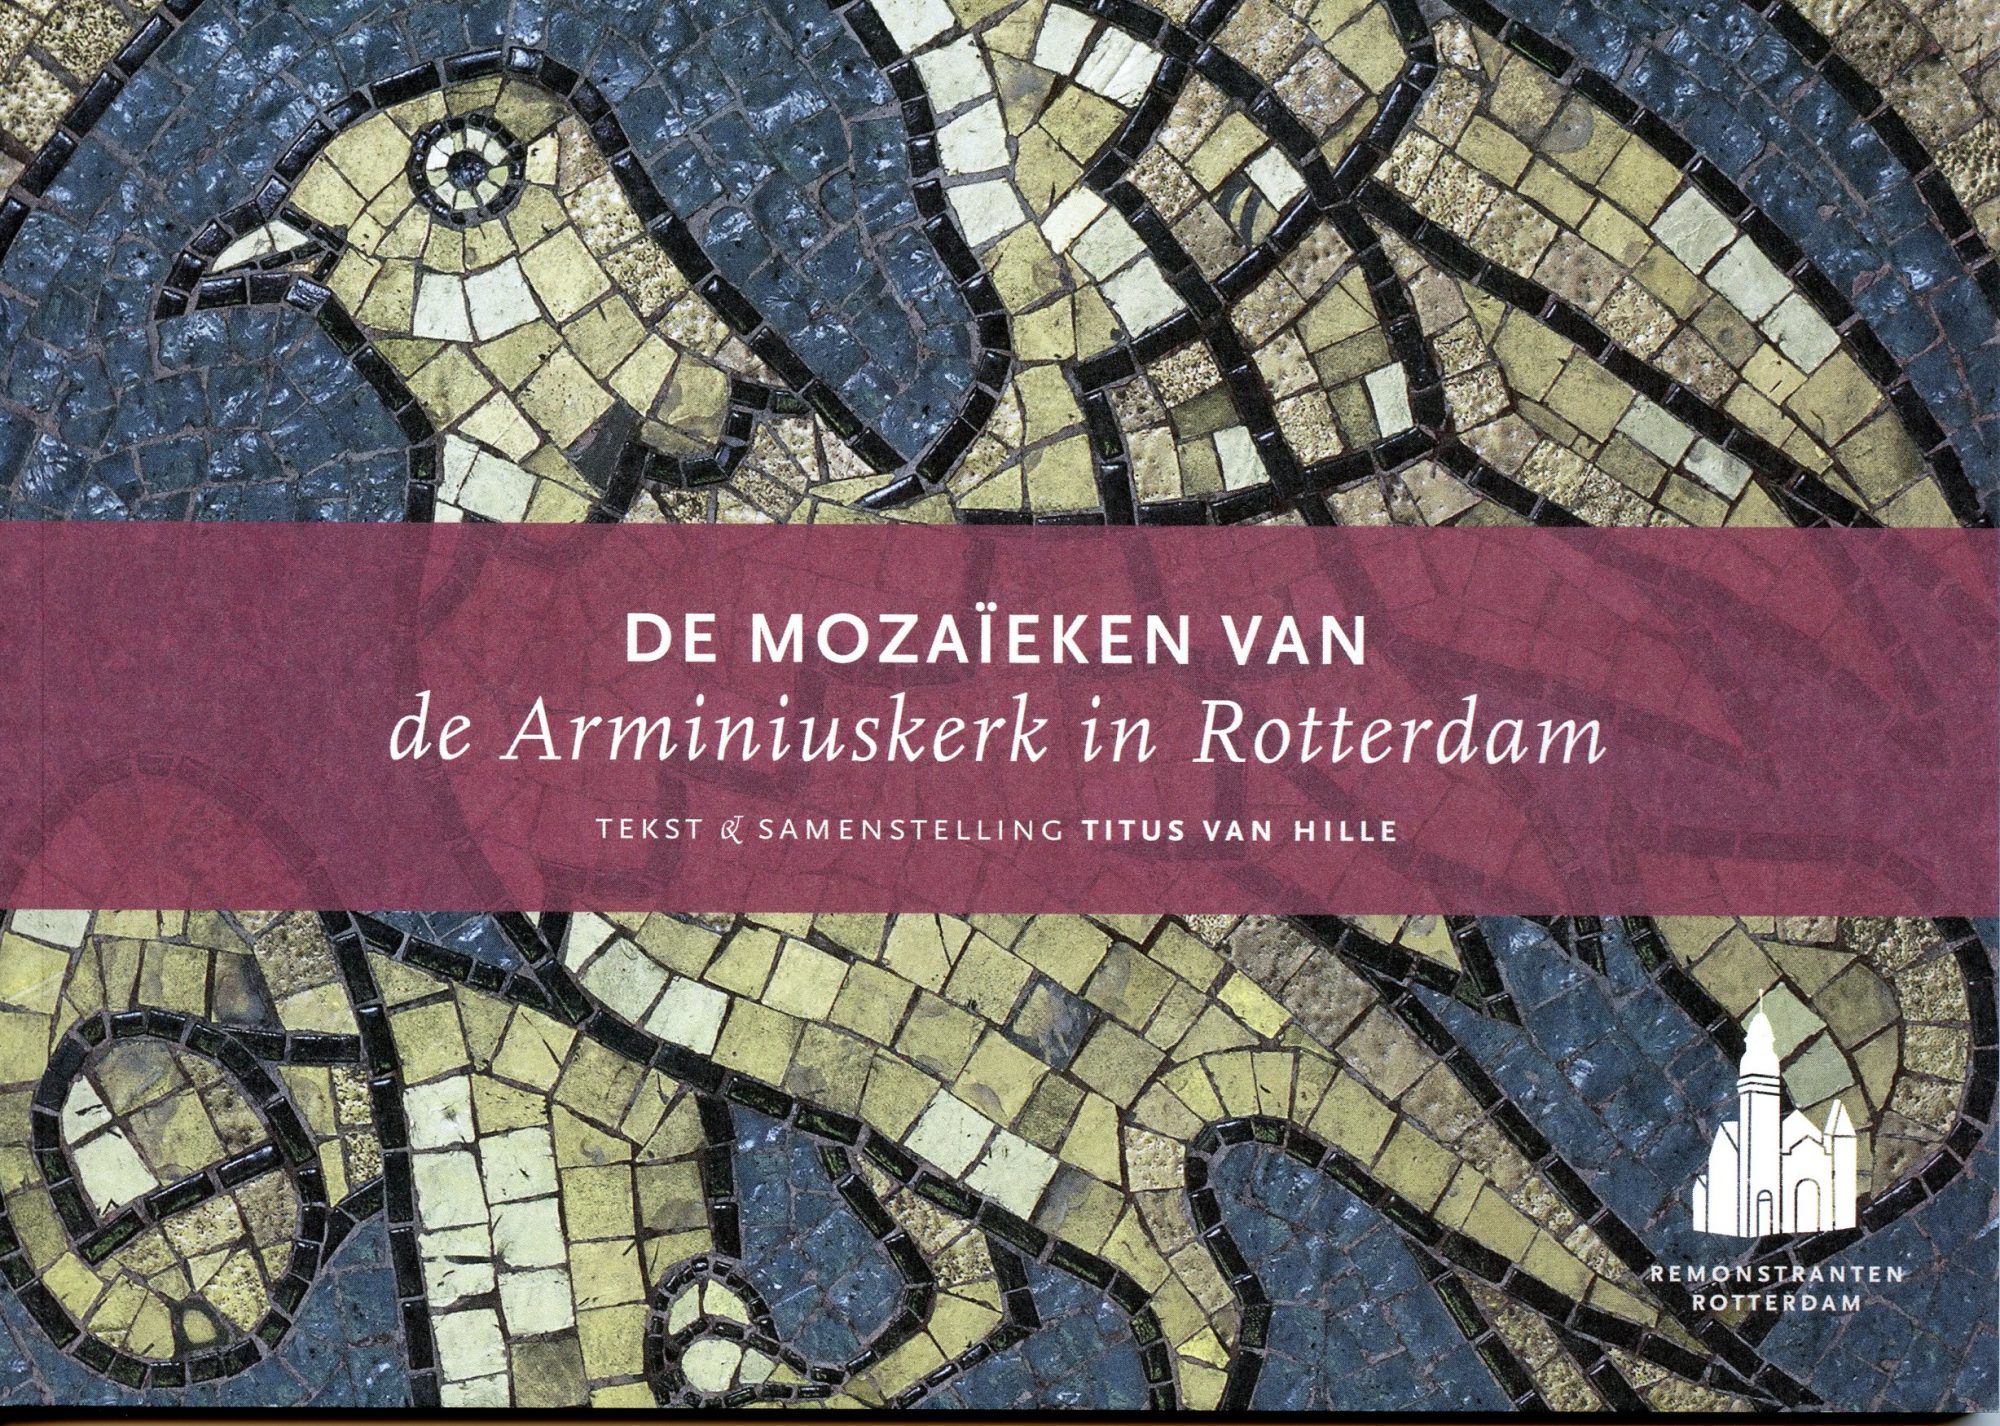 De mozaïeken van de Arminiuskerk in Rotterdam